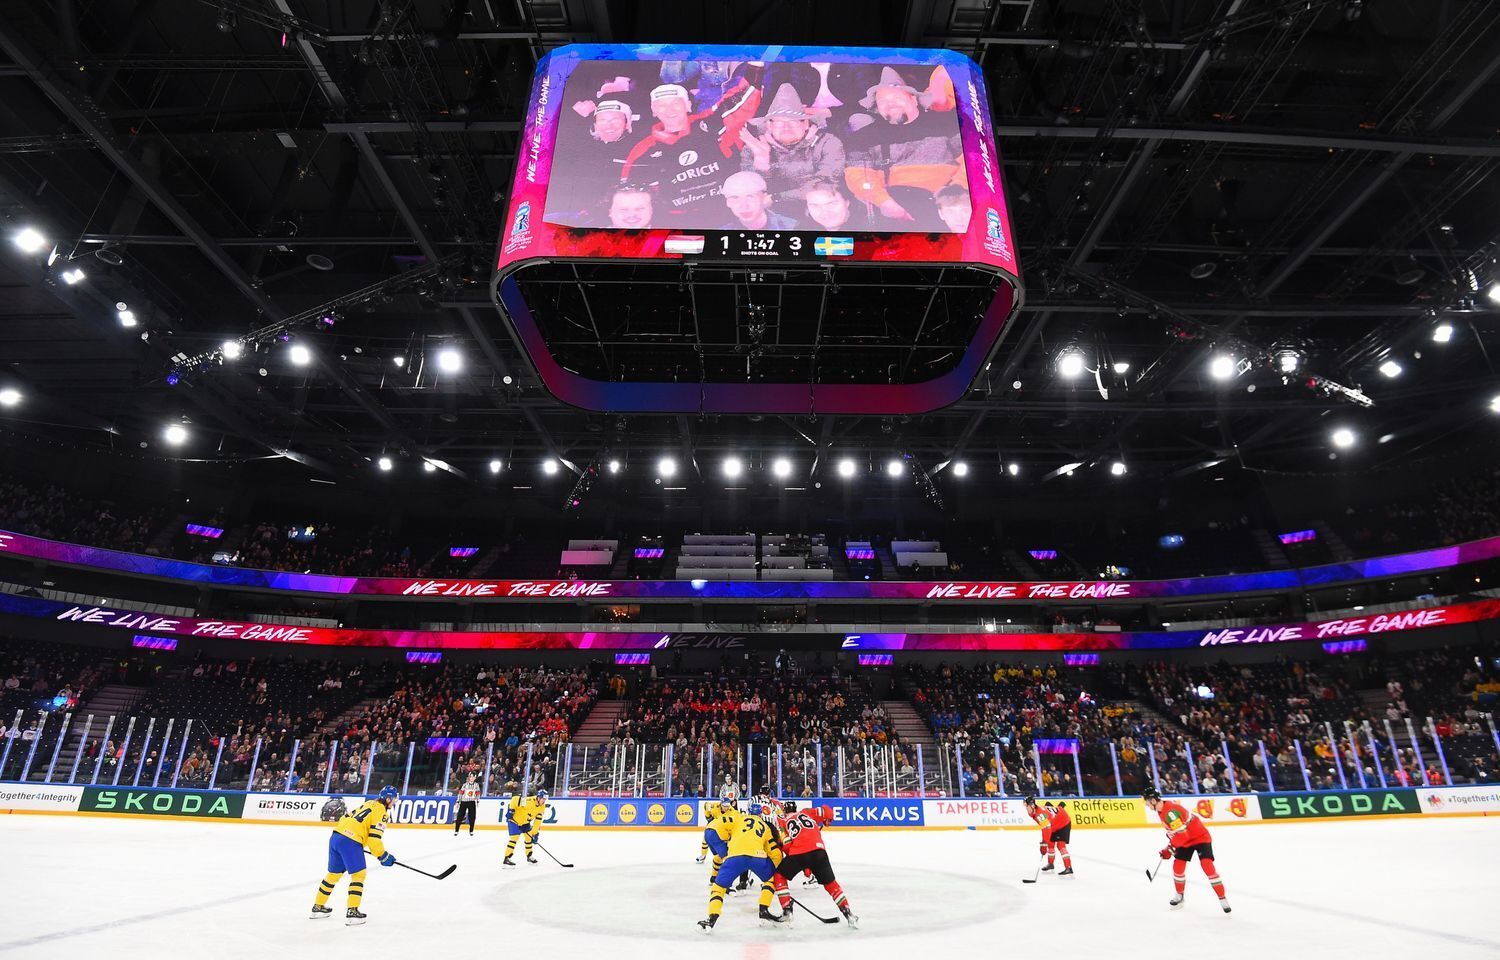 На ЧМ по хоккею фаната заставили снять майку с надписью "Россия", вызвав истерику в Госдуме